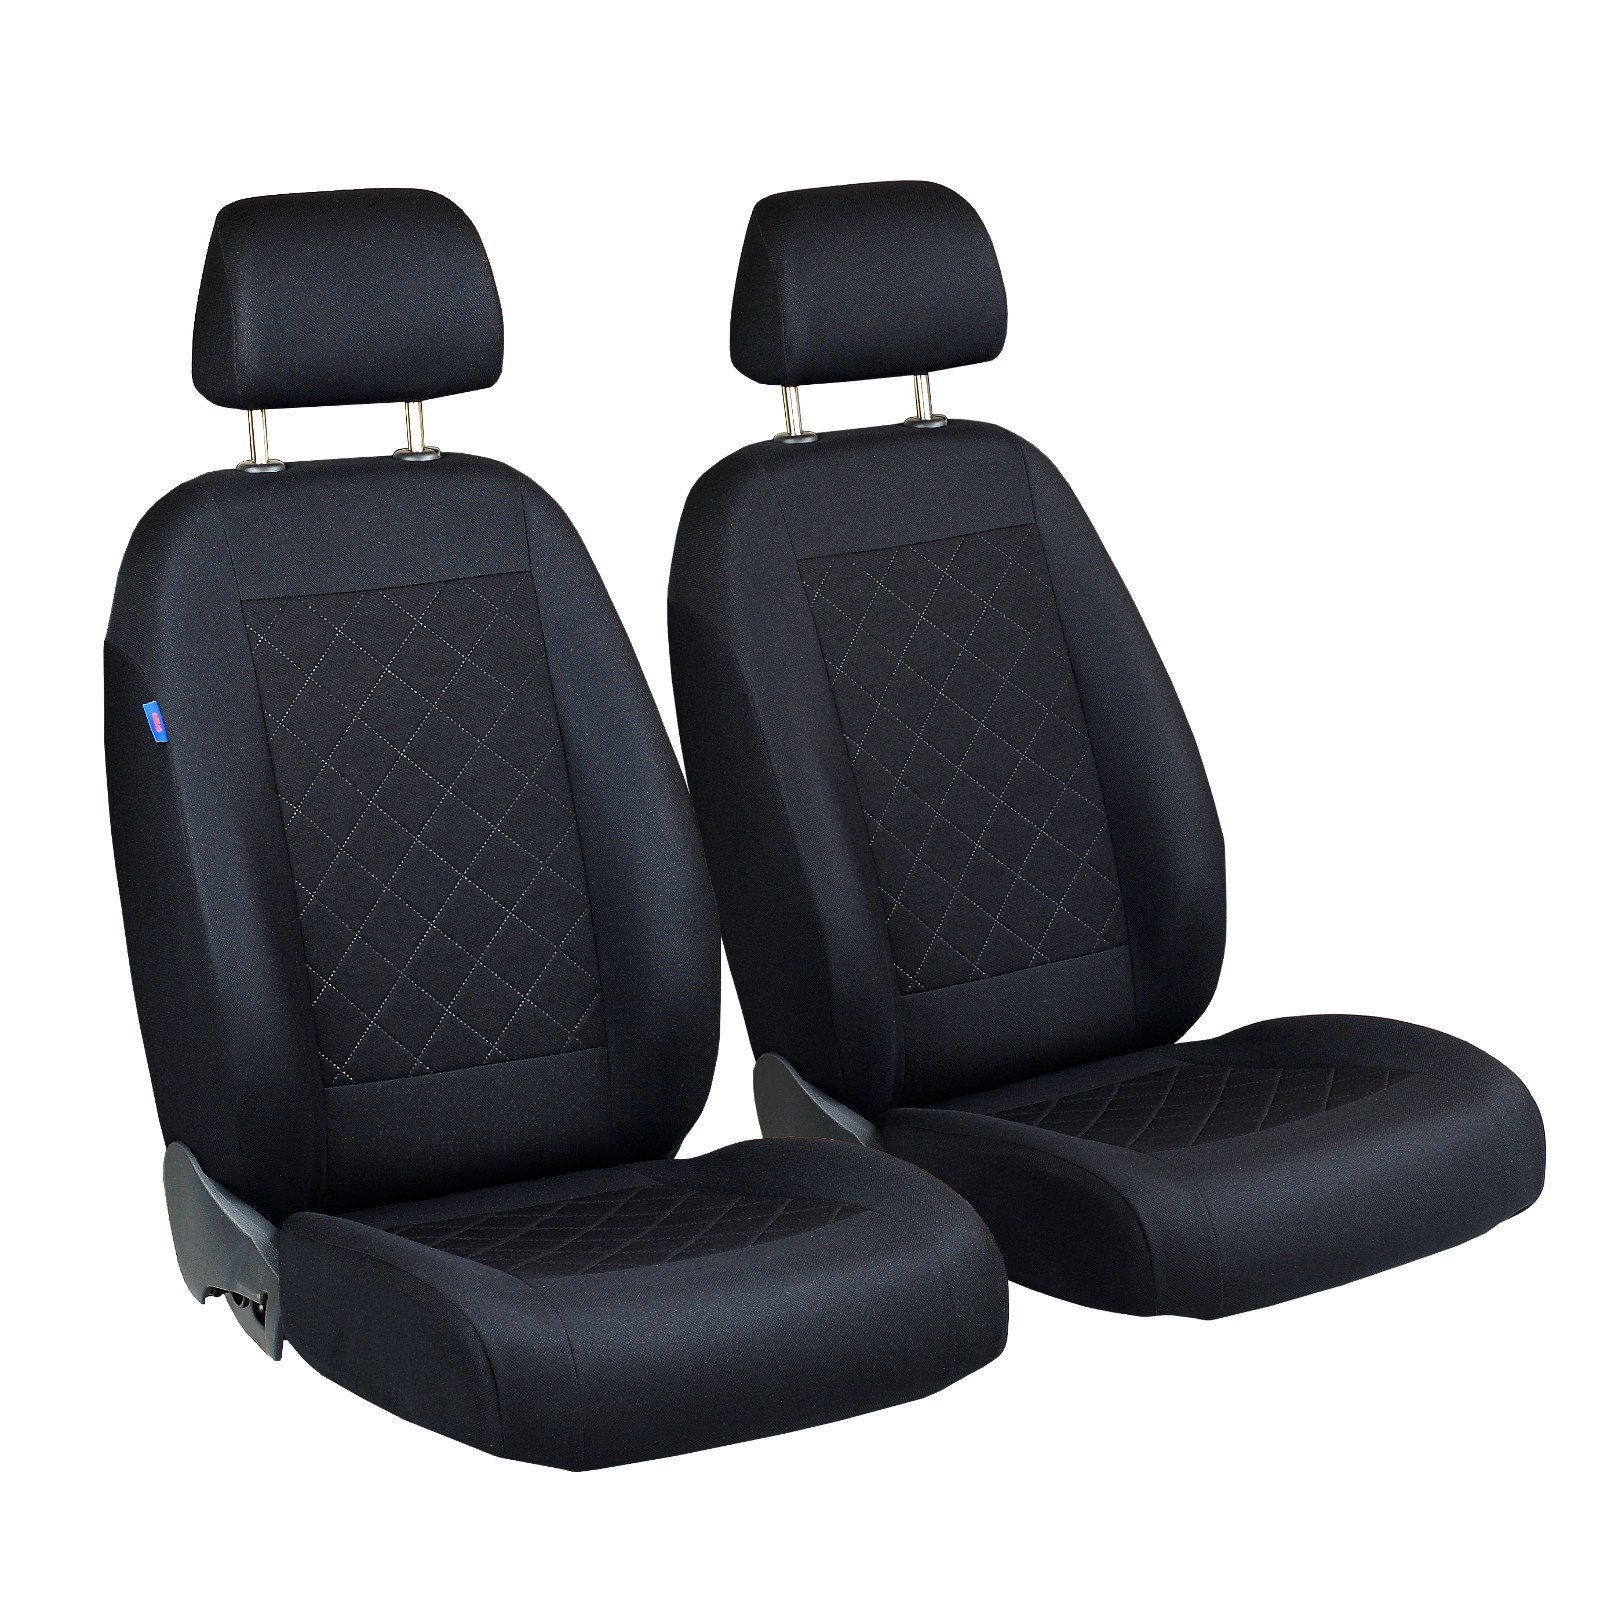 Ypsilon Vorne Sitzbezüge - für Fahrer und Beifahrer - Farbe Premium Schwarz gepresstes Karomuster